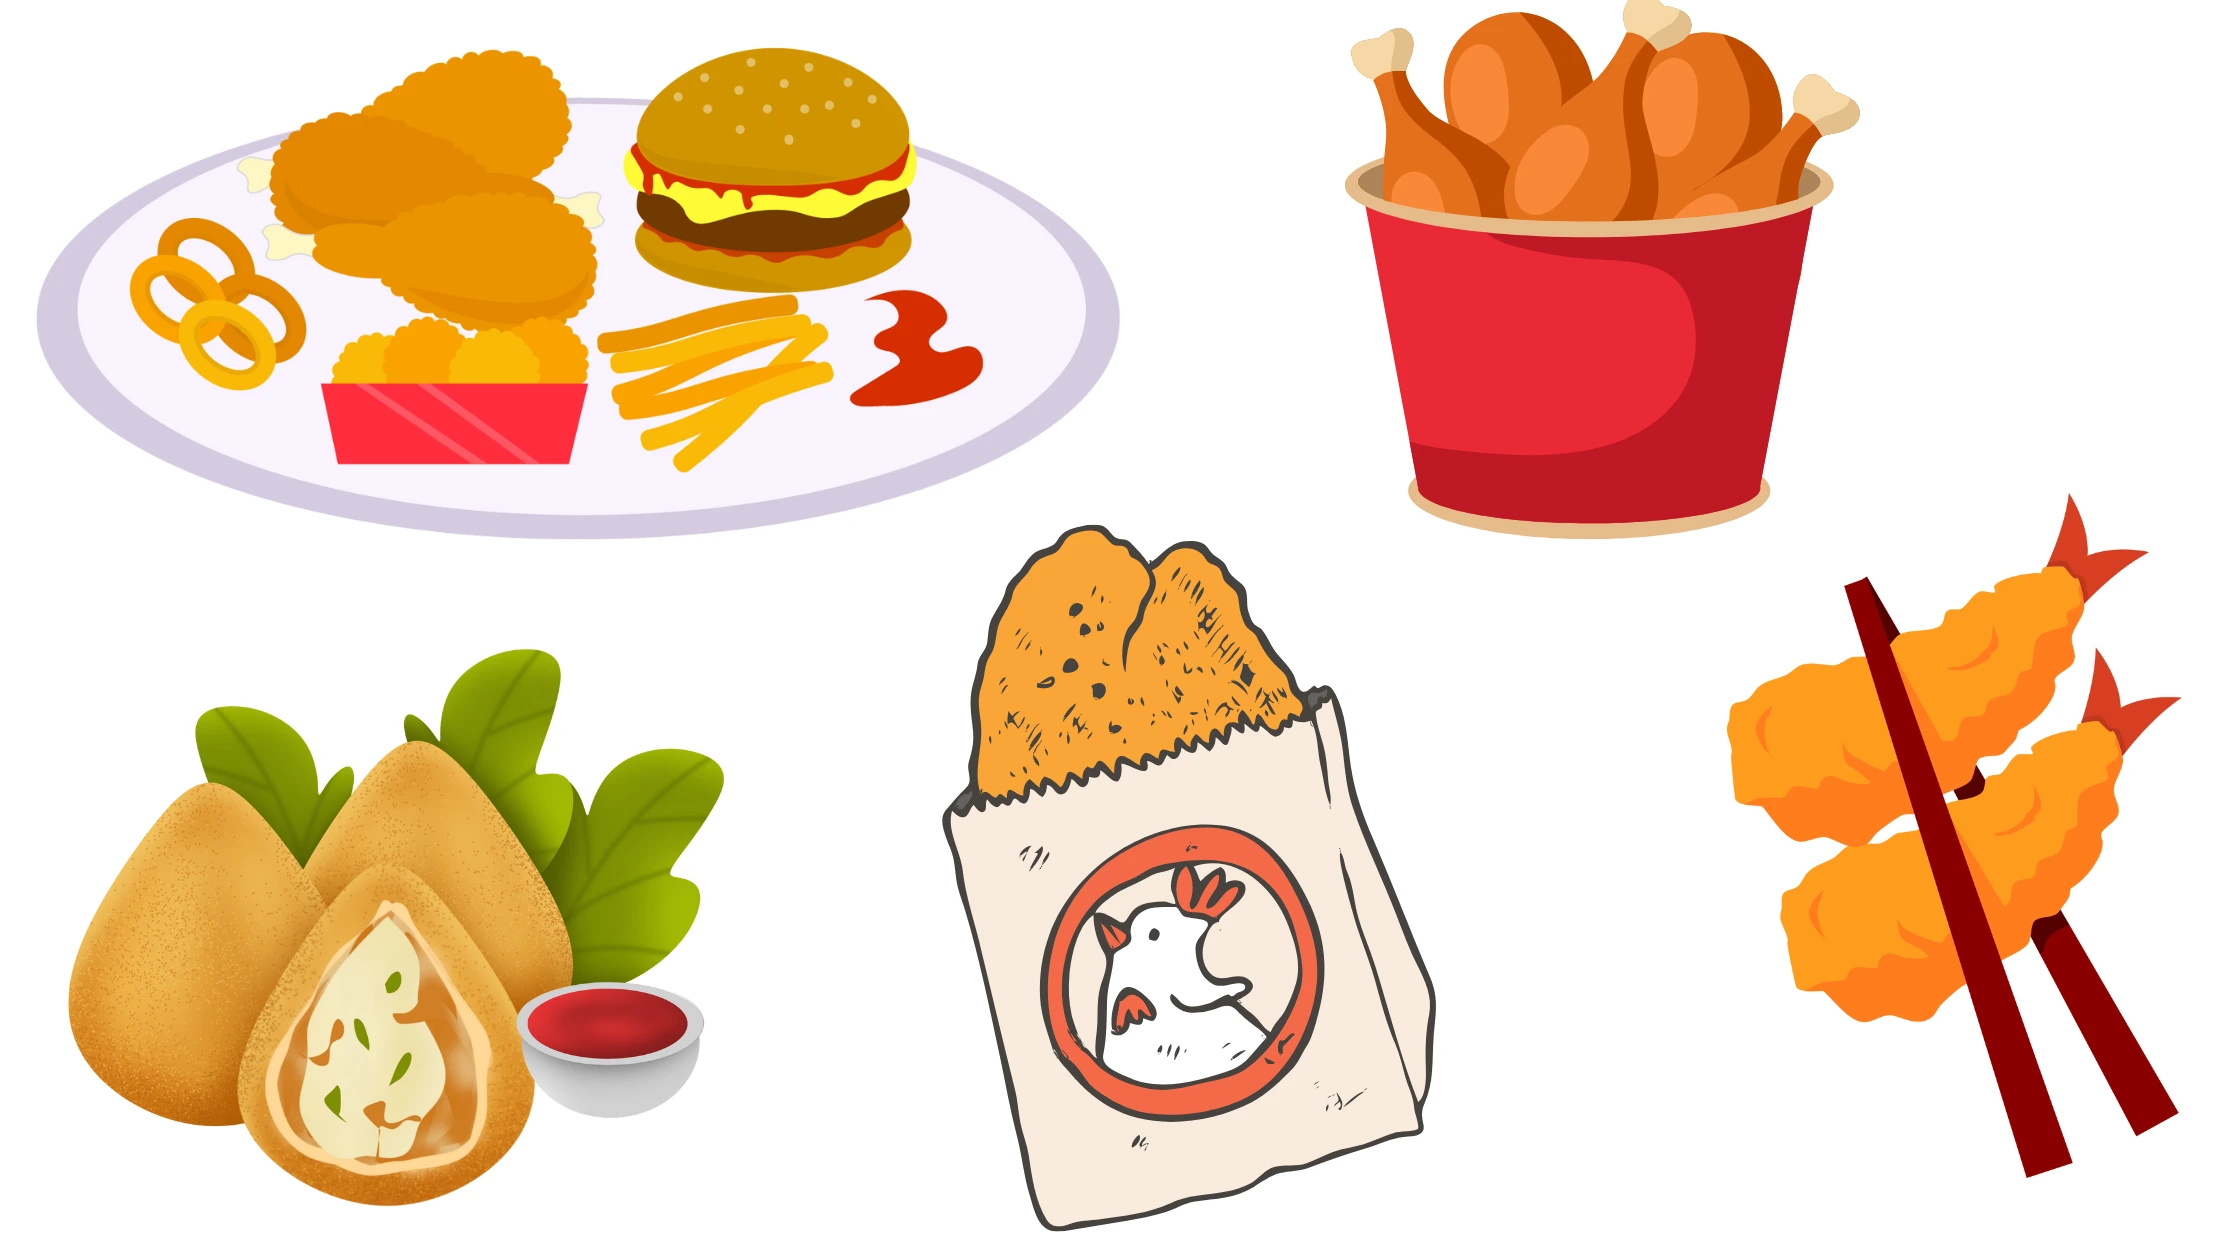 alcuni cibi fritti contenenti grassi trans, come pollo, arancini, cotoletta e fast food